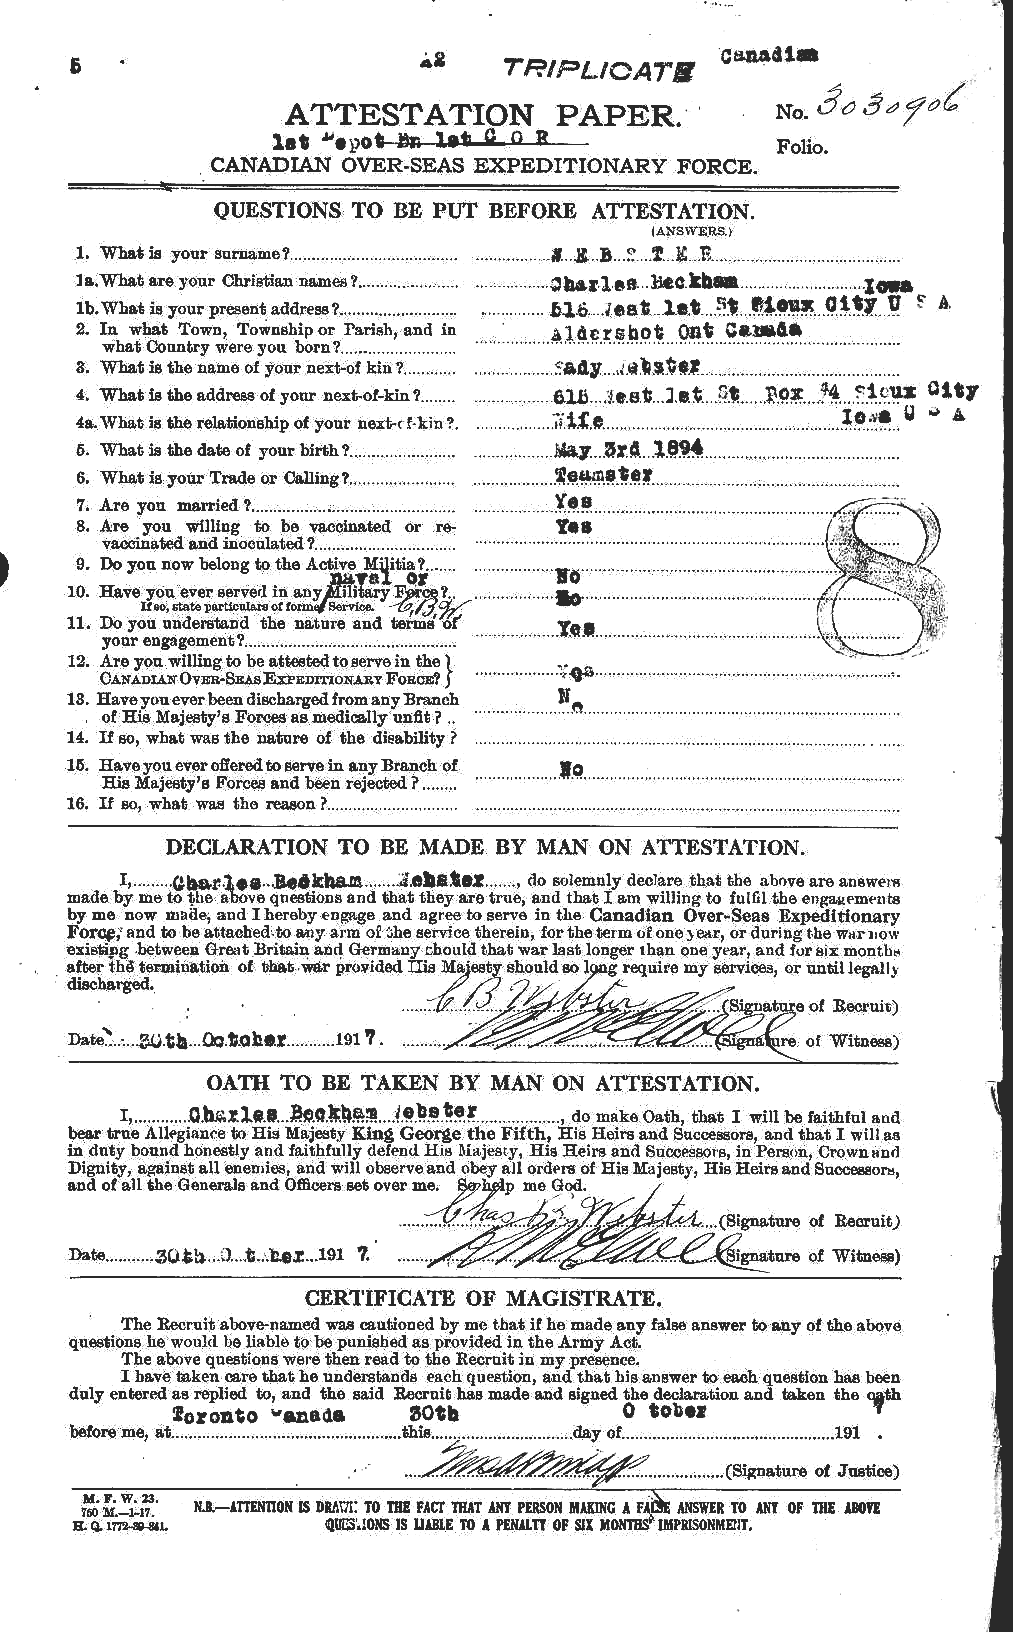 Dossiers du Personnel de la Première Guerre mondiale - CEC 670292a